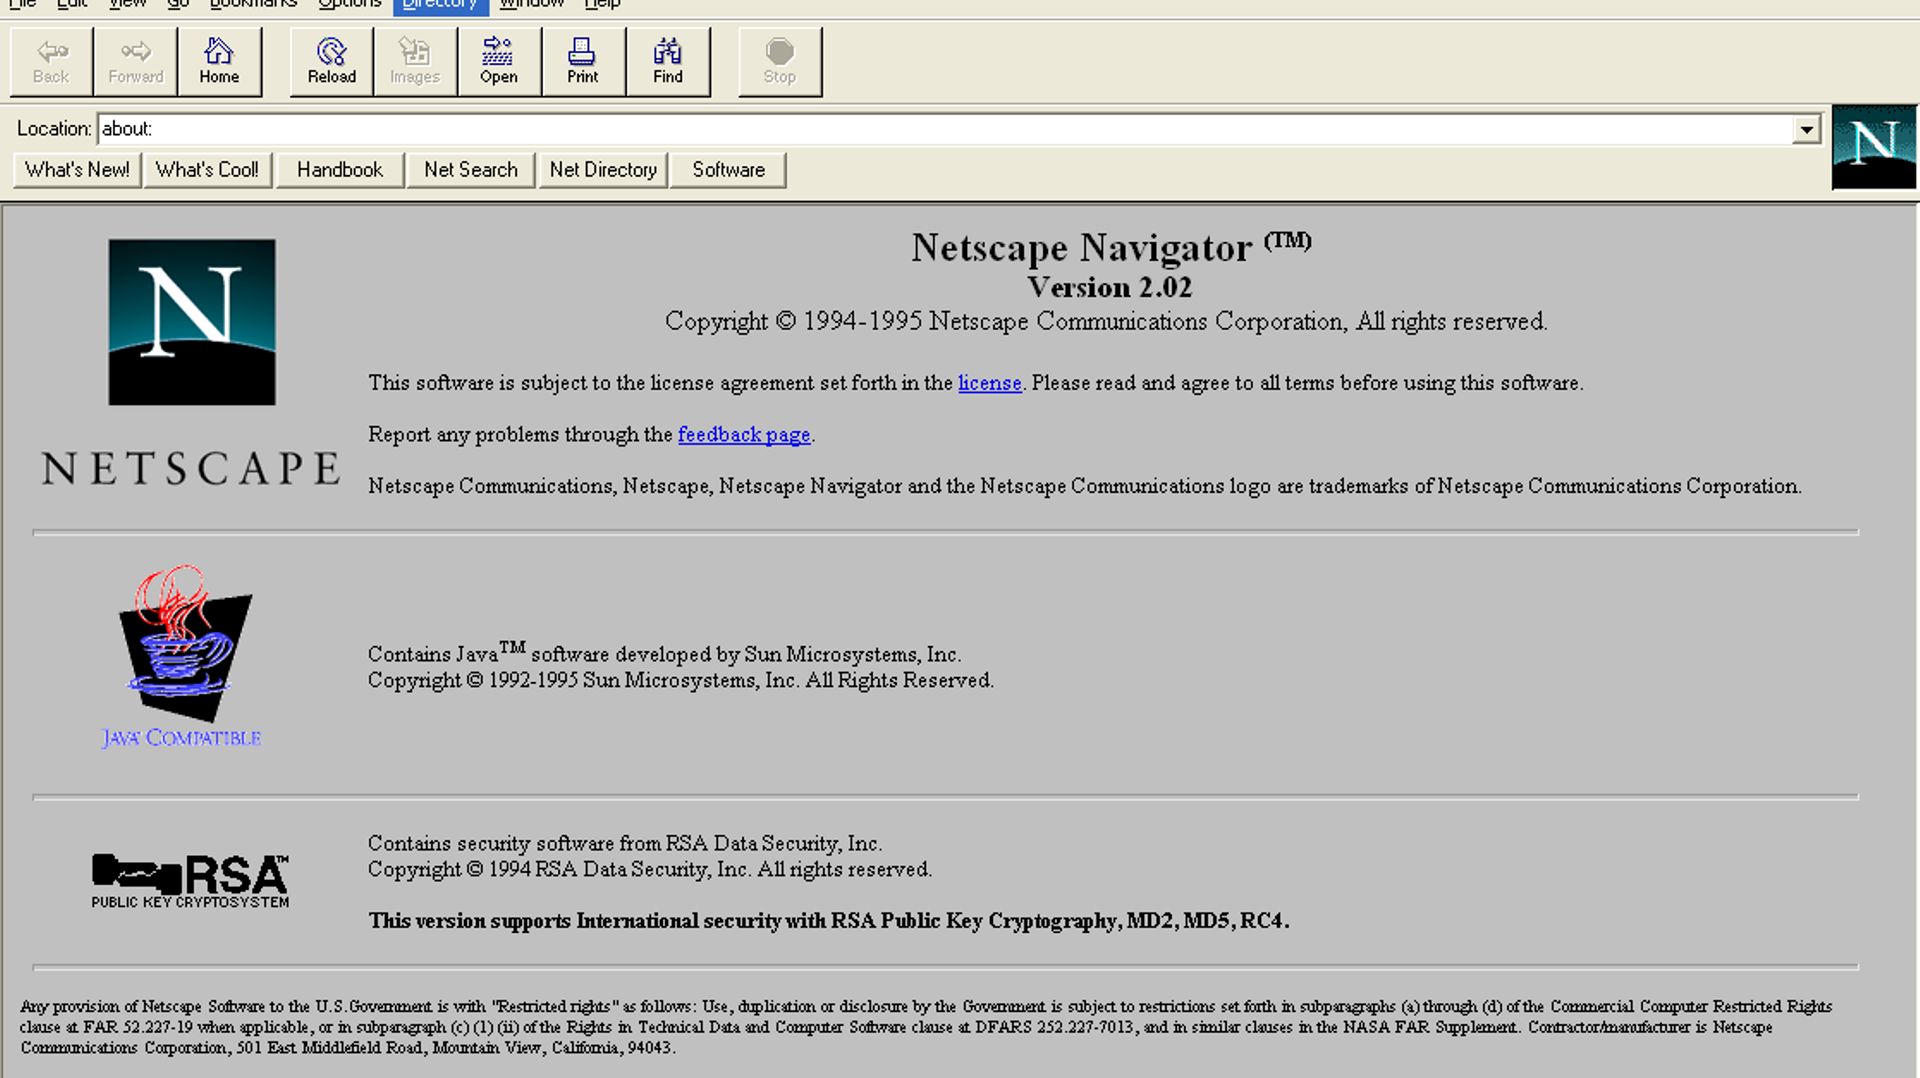 Voilà à quoi ressemblait Netscape Navigator